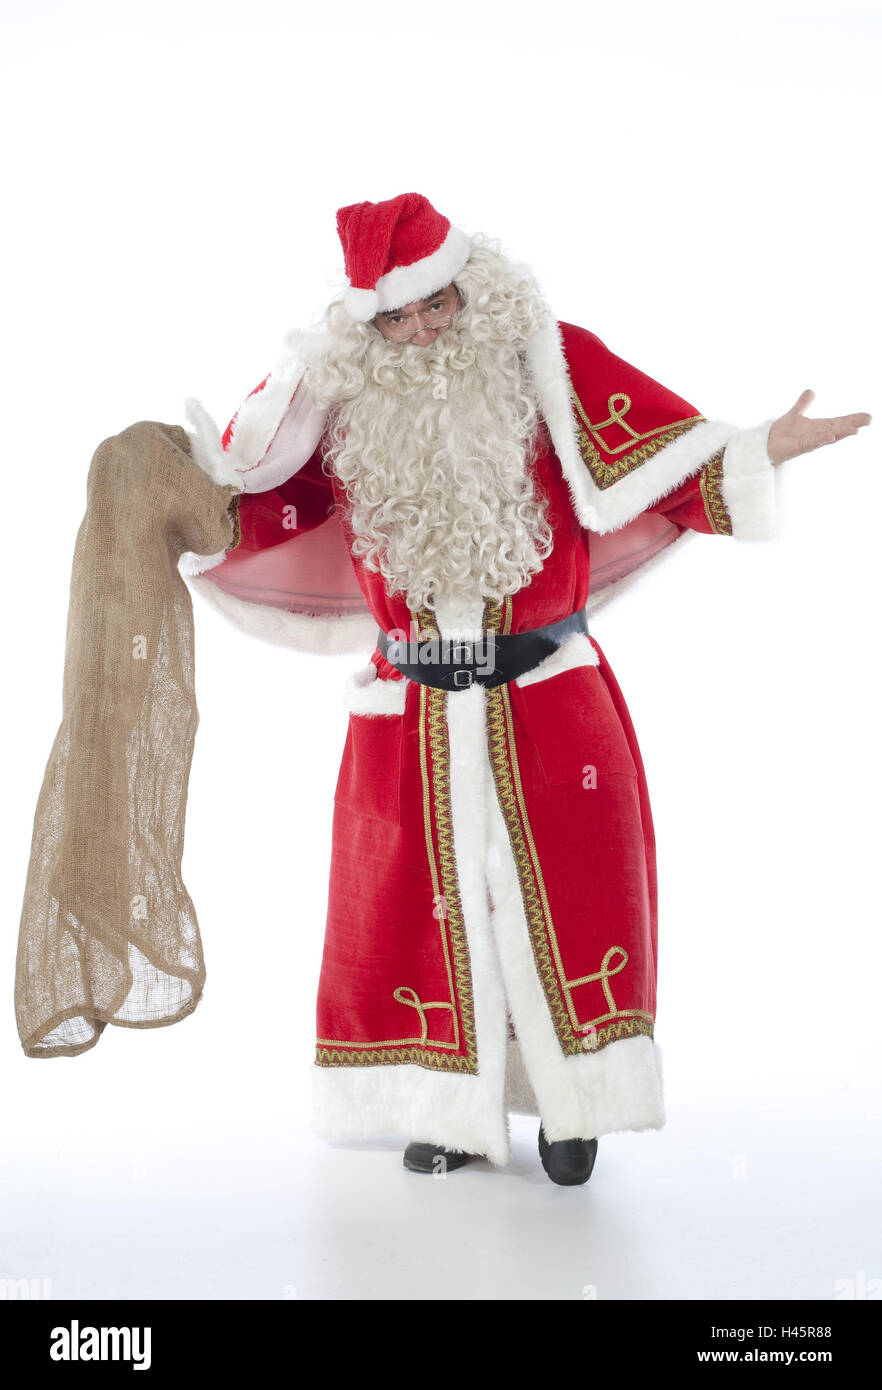 Santa Claus, Beutel, Blank, Geste, entschuldigen Sie mich, Leute, Mann, Futter, Kostüm, Weihnachtsmann-Kostüm, Weihnachtsmann Kostüm, Geschenk Beutel, Studio, Freisteller, Weihnachten, Advent, Santa, Stockfoto